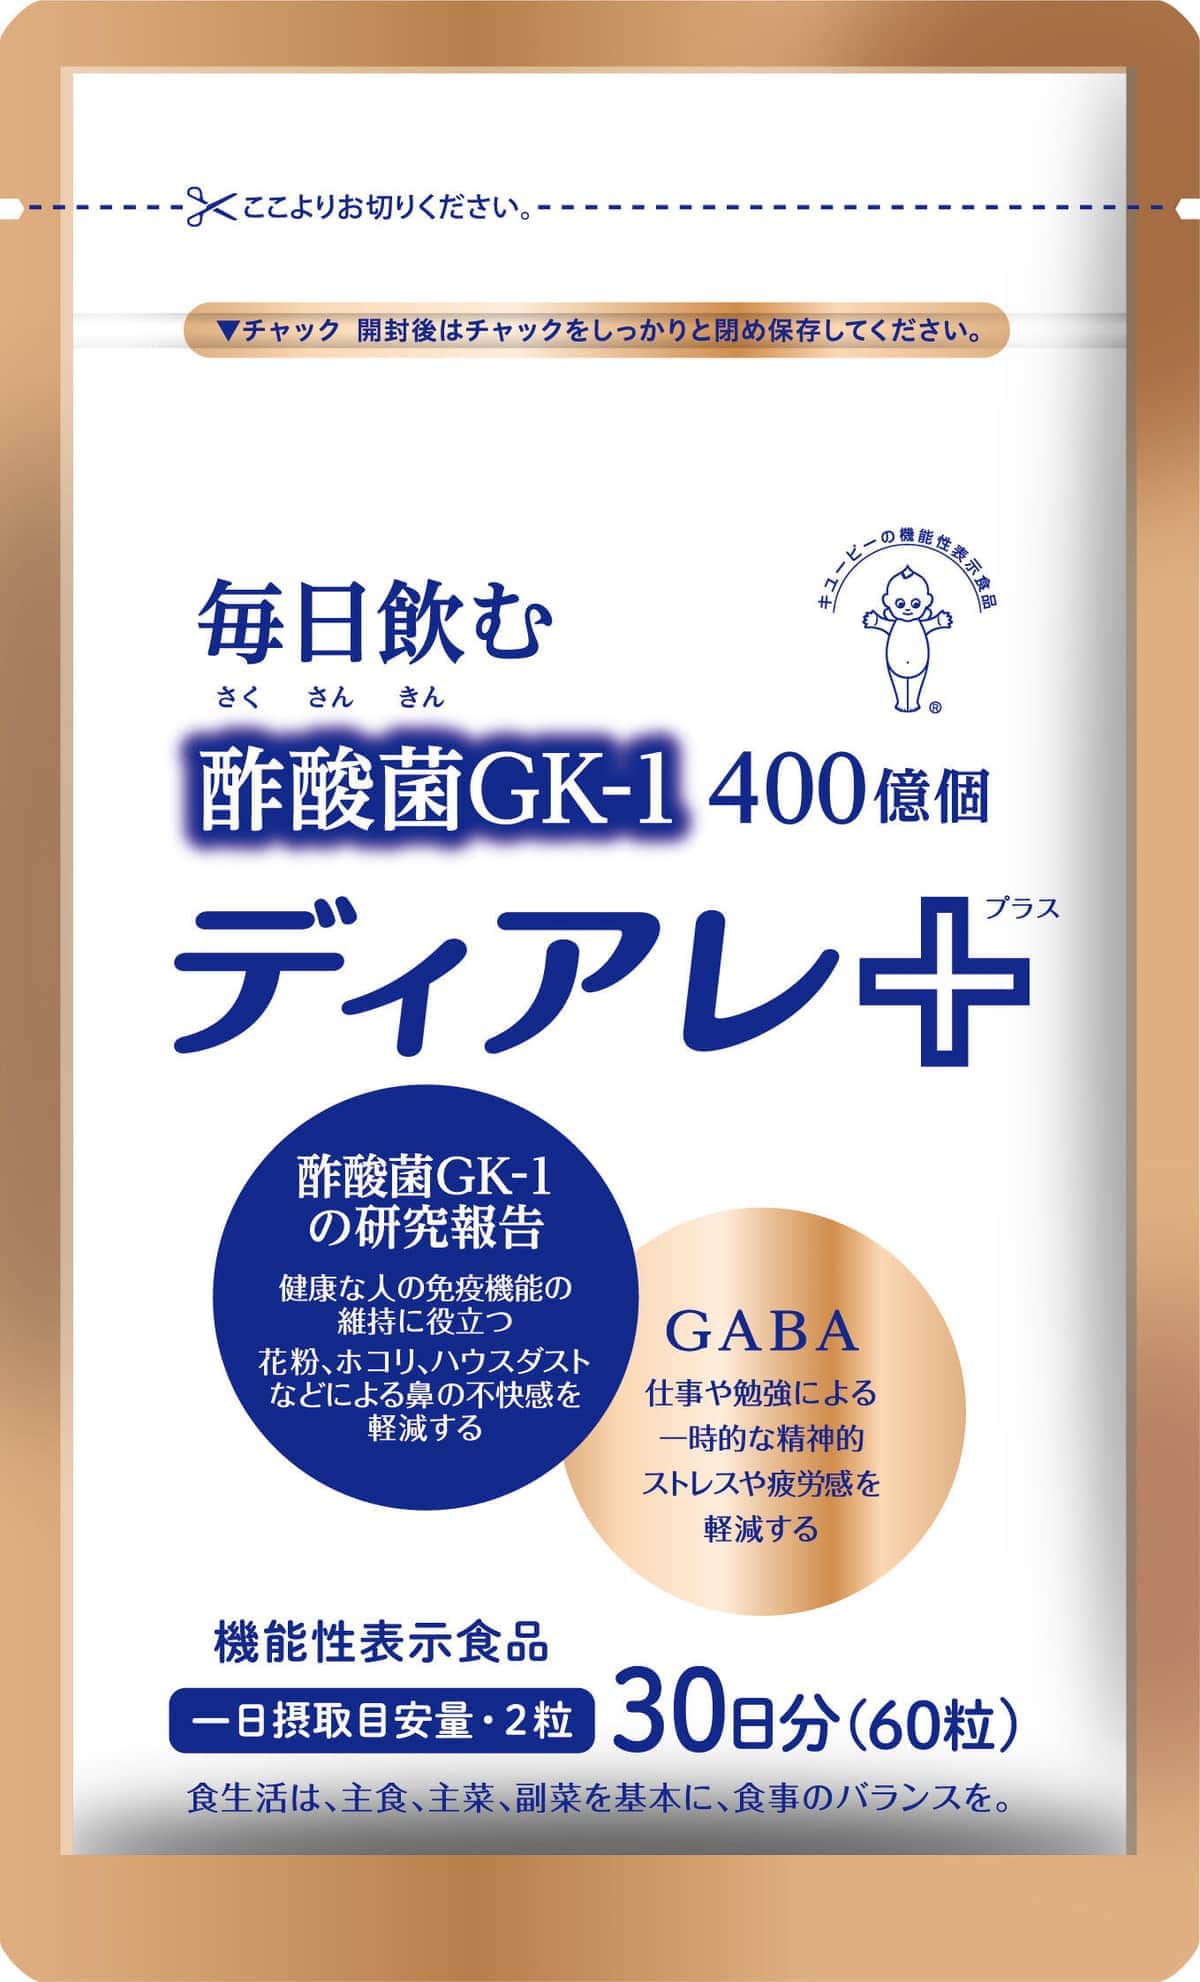 酢酸菌「GK-1」と「GABA」配合、3つの機能性をサプリで手軽に